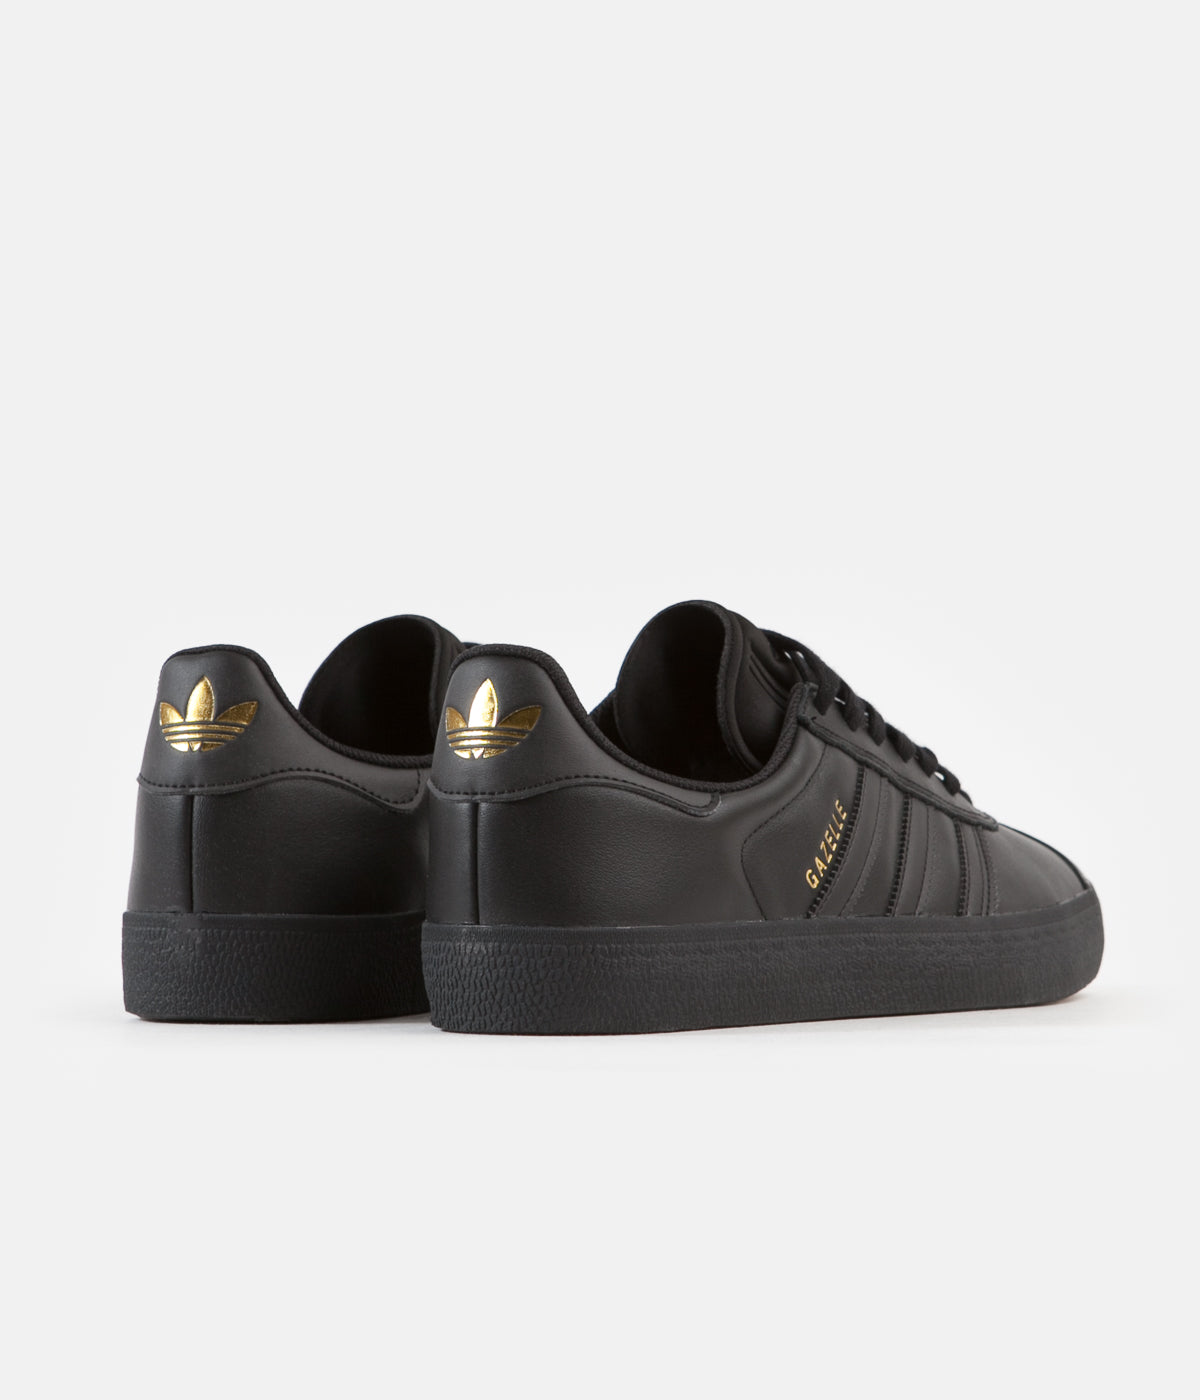 Corrección profesor ataque Adidas Gazelle ADV Shoes - Core Black / Core Black / Gold Metallic |  Flatspot